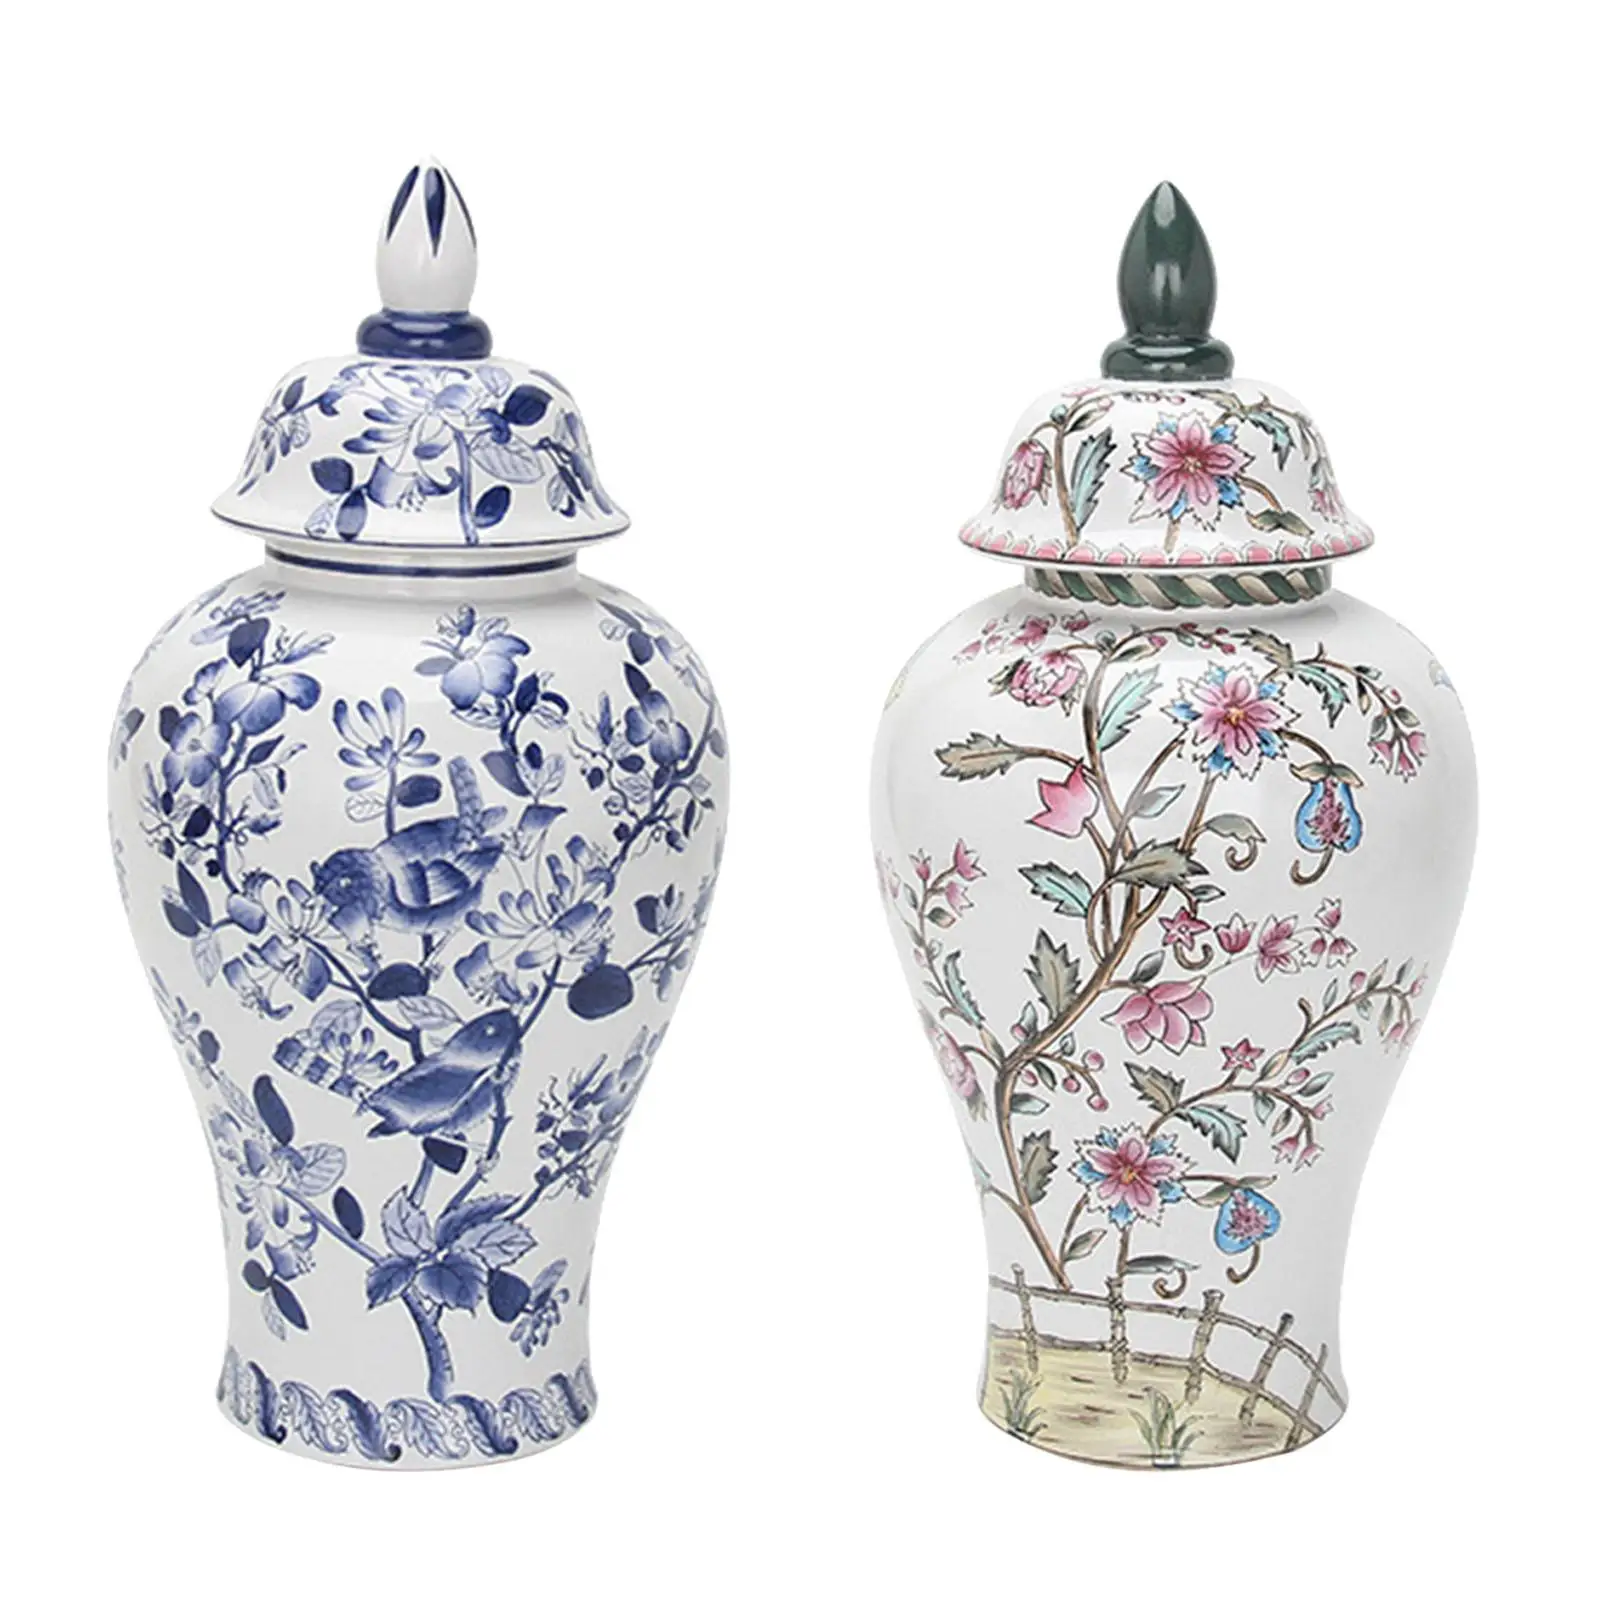 Ceramic Flower Vase Temple Jar Storage Jar Porcelain Ginger Jar for Office